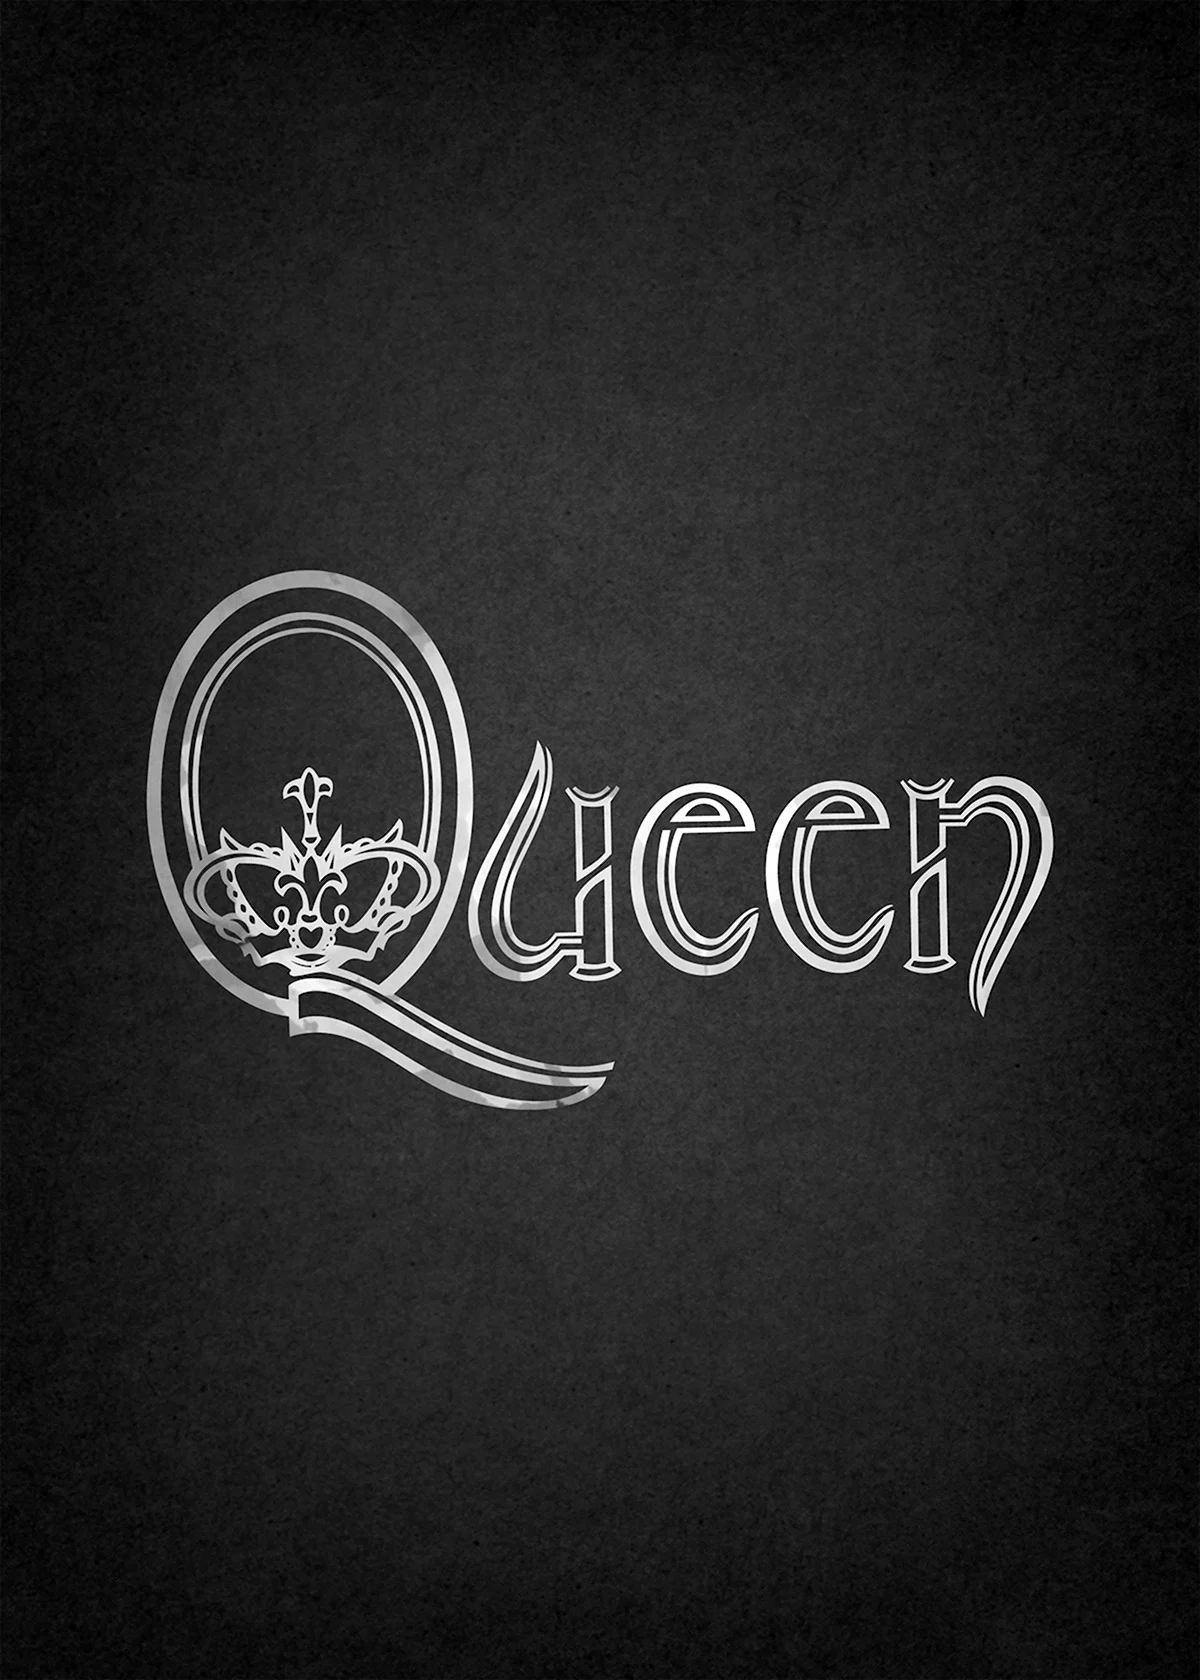 Queen Band logo